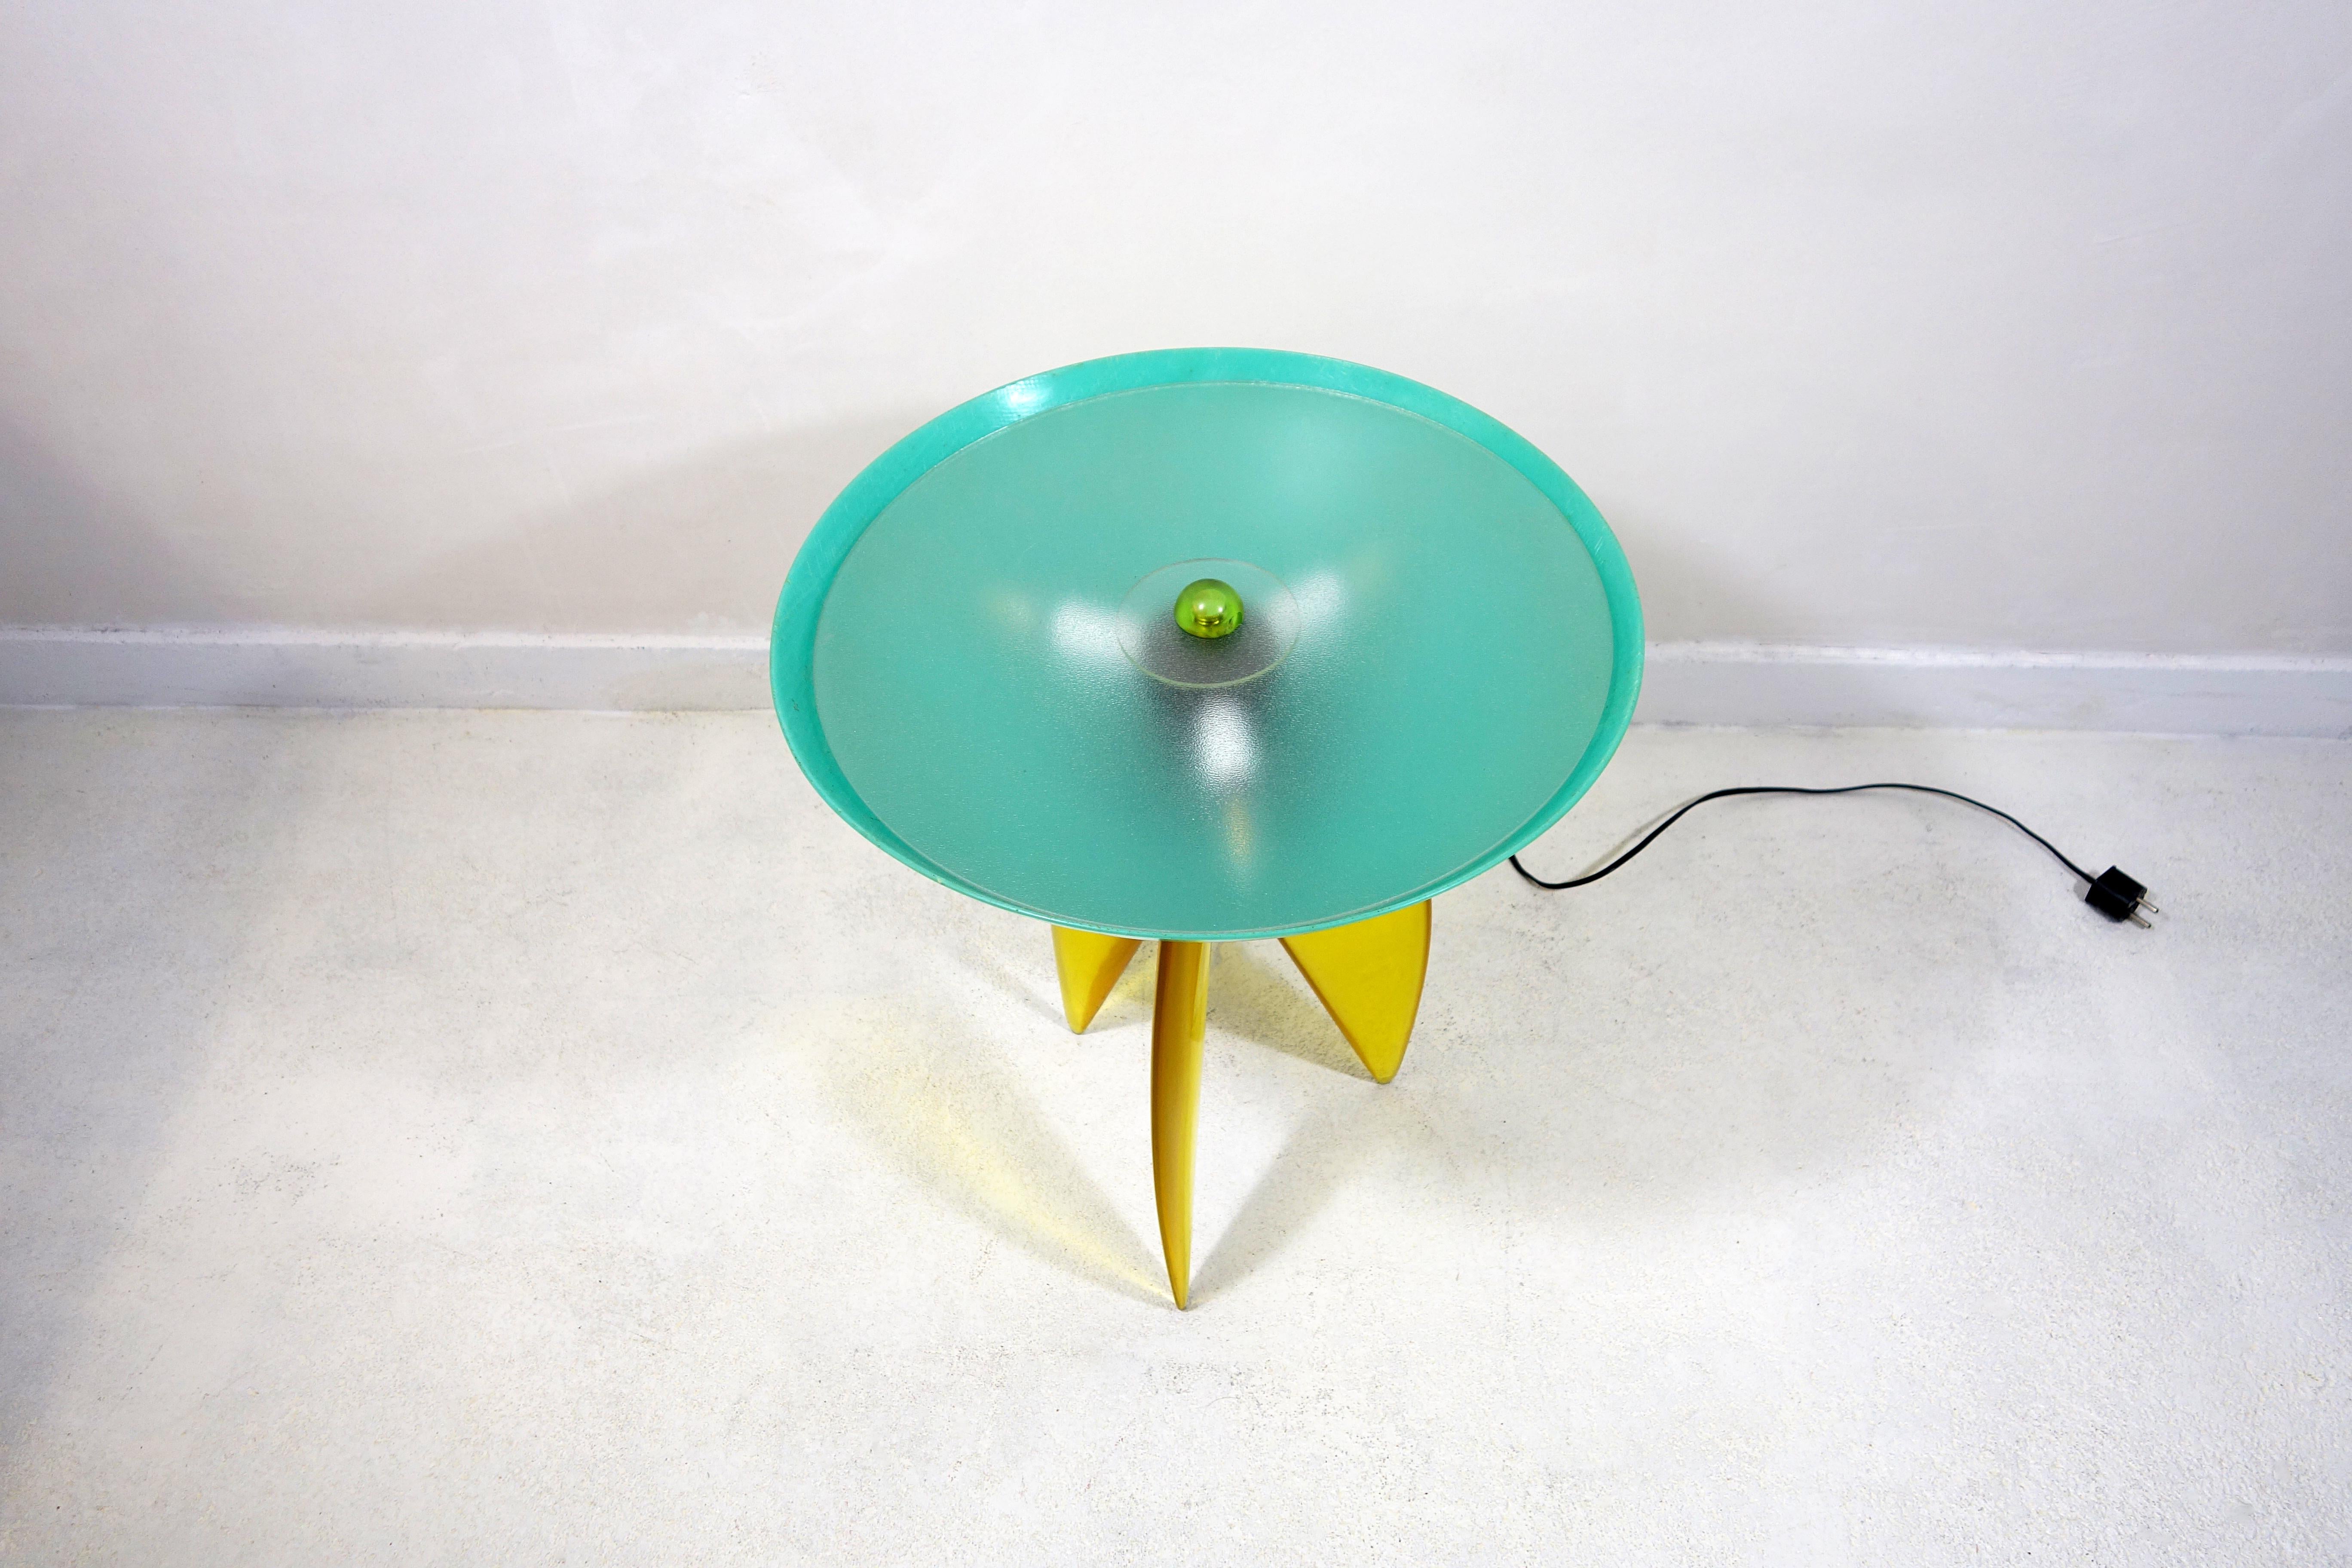 Der amerikanische Künstler Steve Zoller ist einzigartig in seiner Verwendung von Farben, elementaren Formen und seinem extravaganten Stil. 1993 fertigte er diese schöne Tischleuchte zusammen mit einer Stehlampe, einer Wandleuchte und zwei